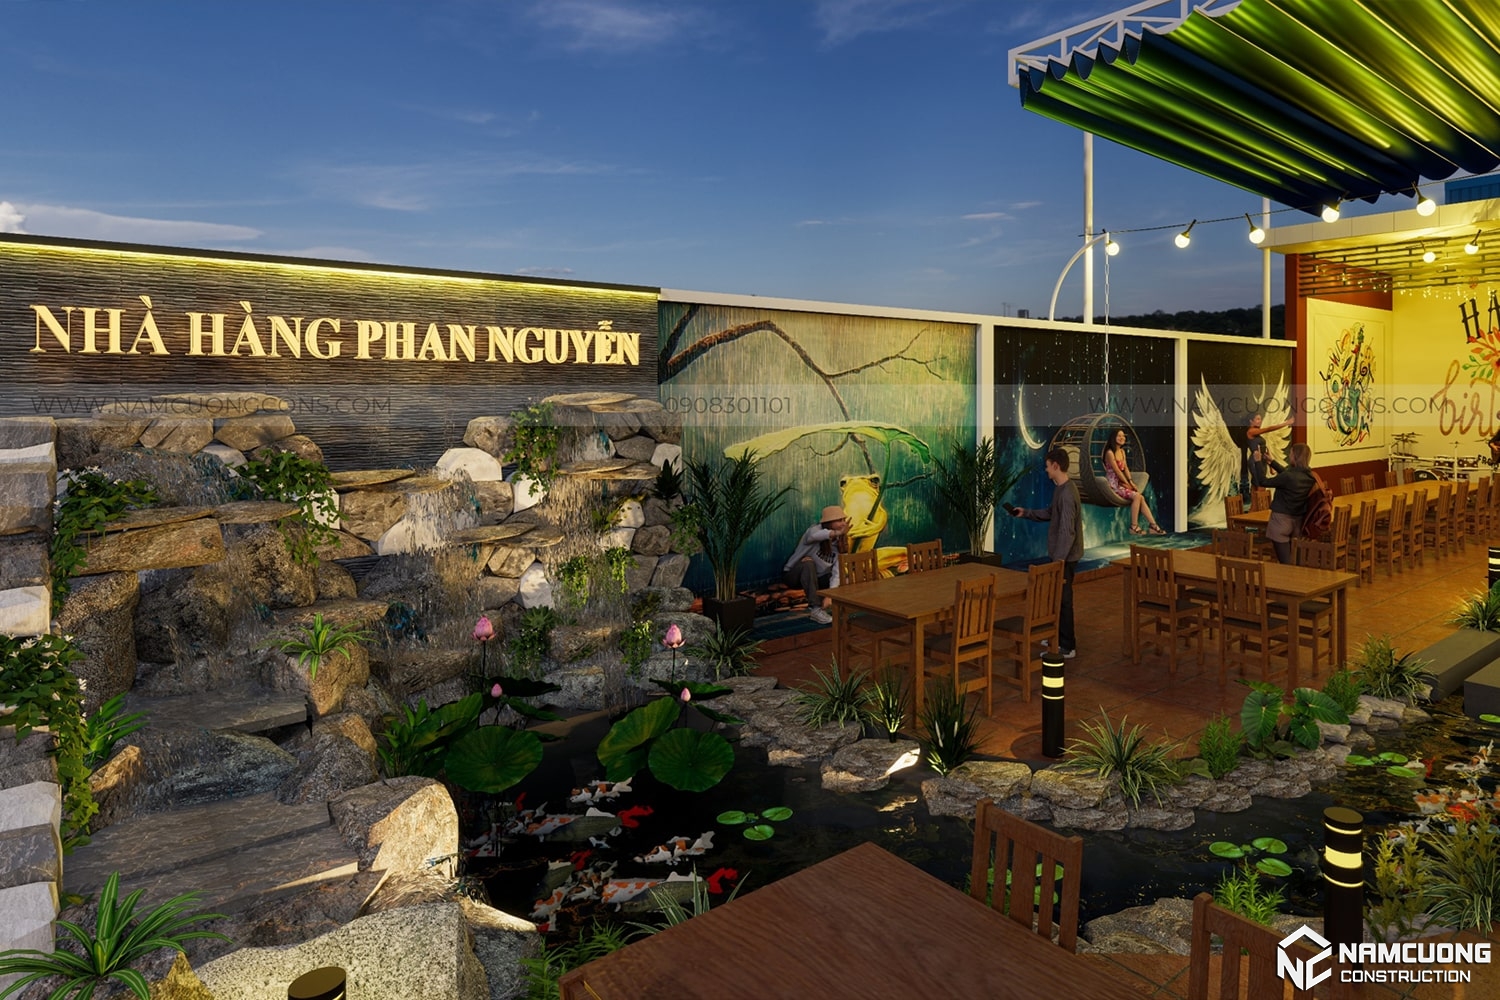 Nhà hàng Phan Nguyễn